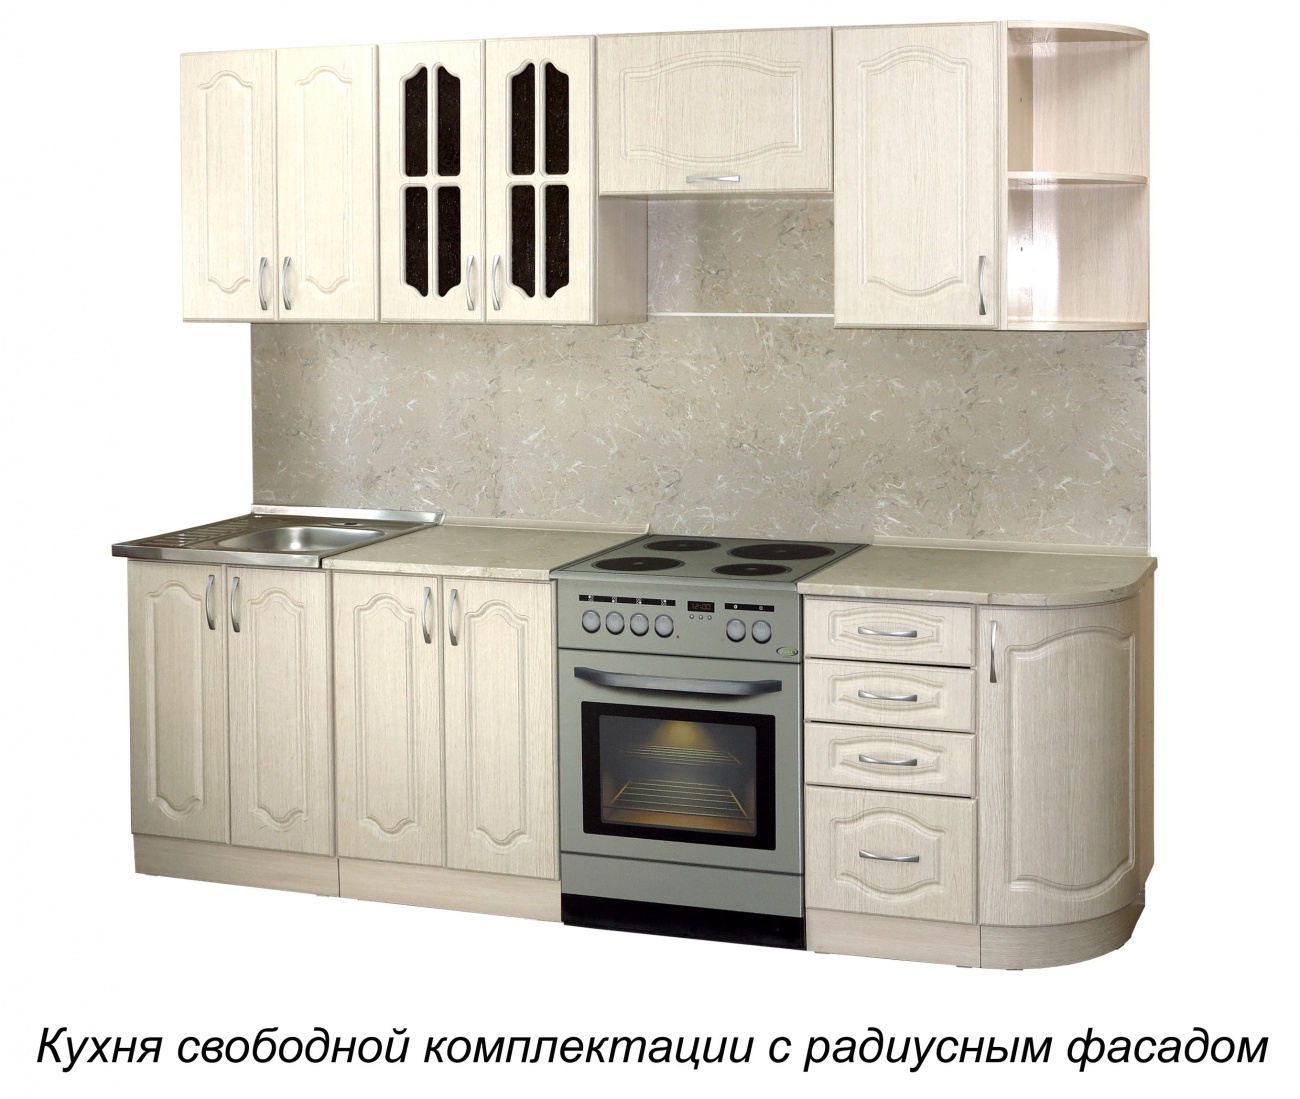 кухня классика-1 с радиусным фасадом «Курс-Мебель»